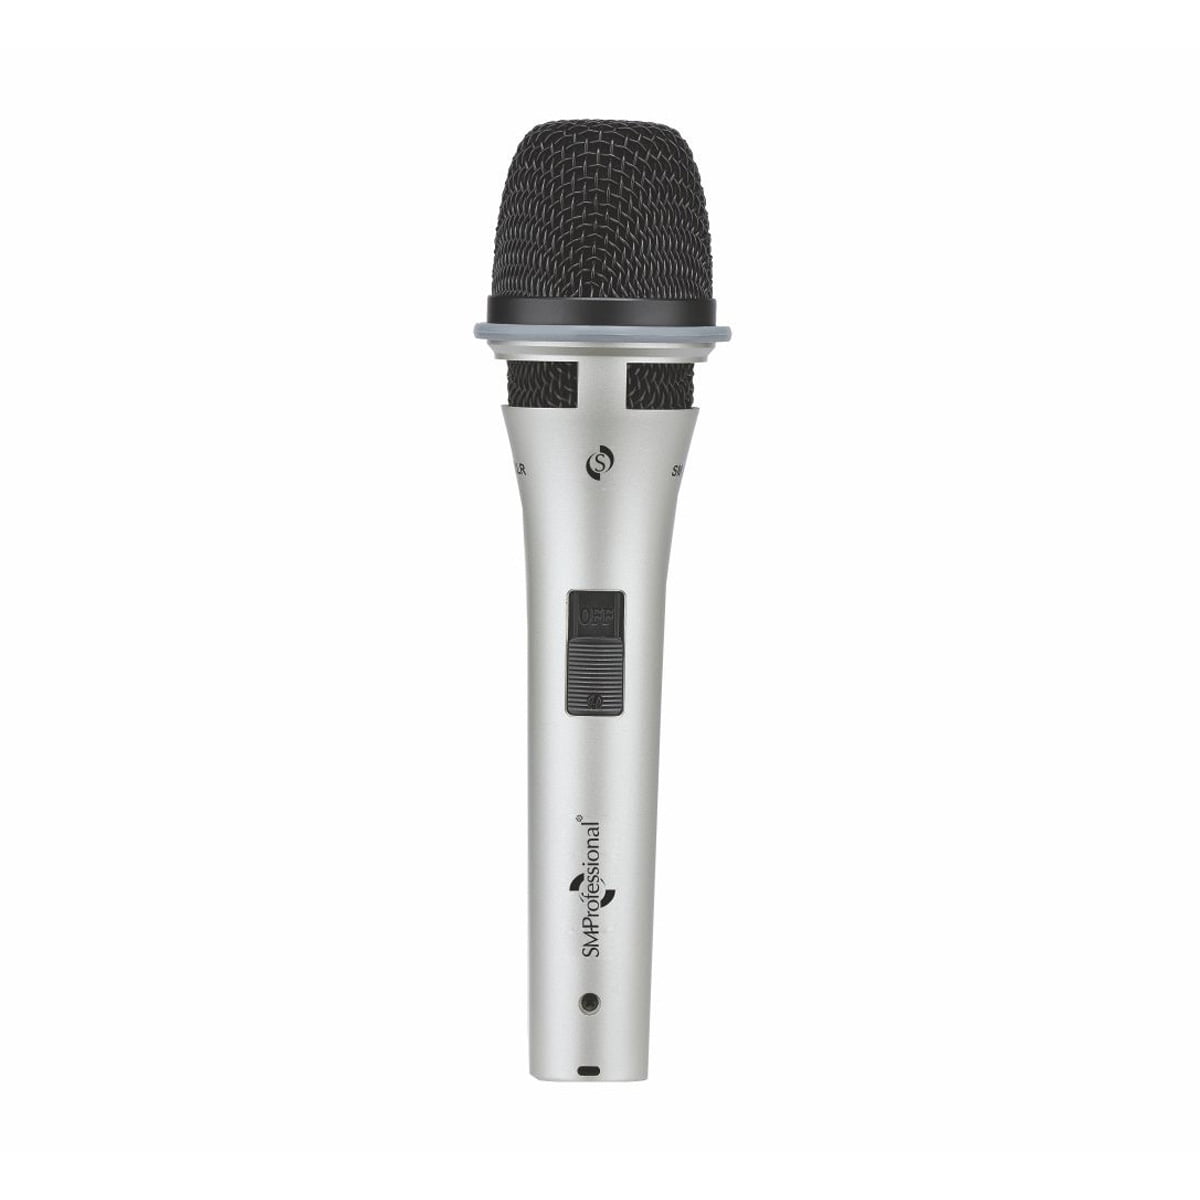 Studiomaster SM 650XLR - Silver High-Quality Cardioid Microphone